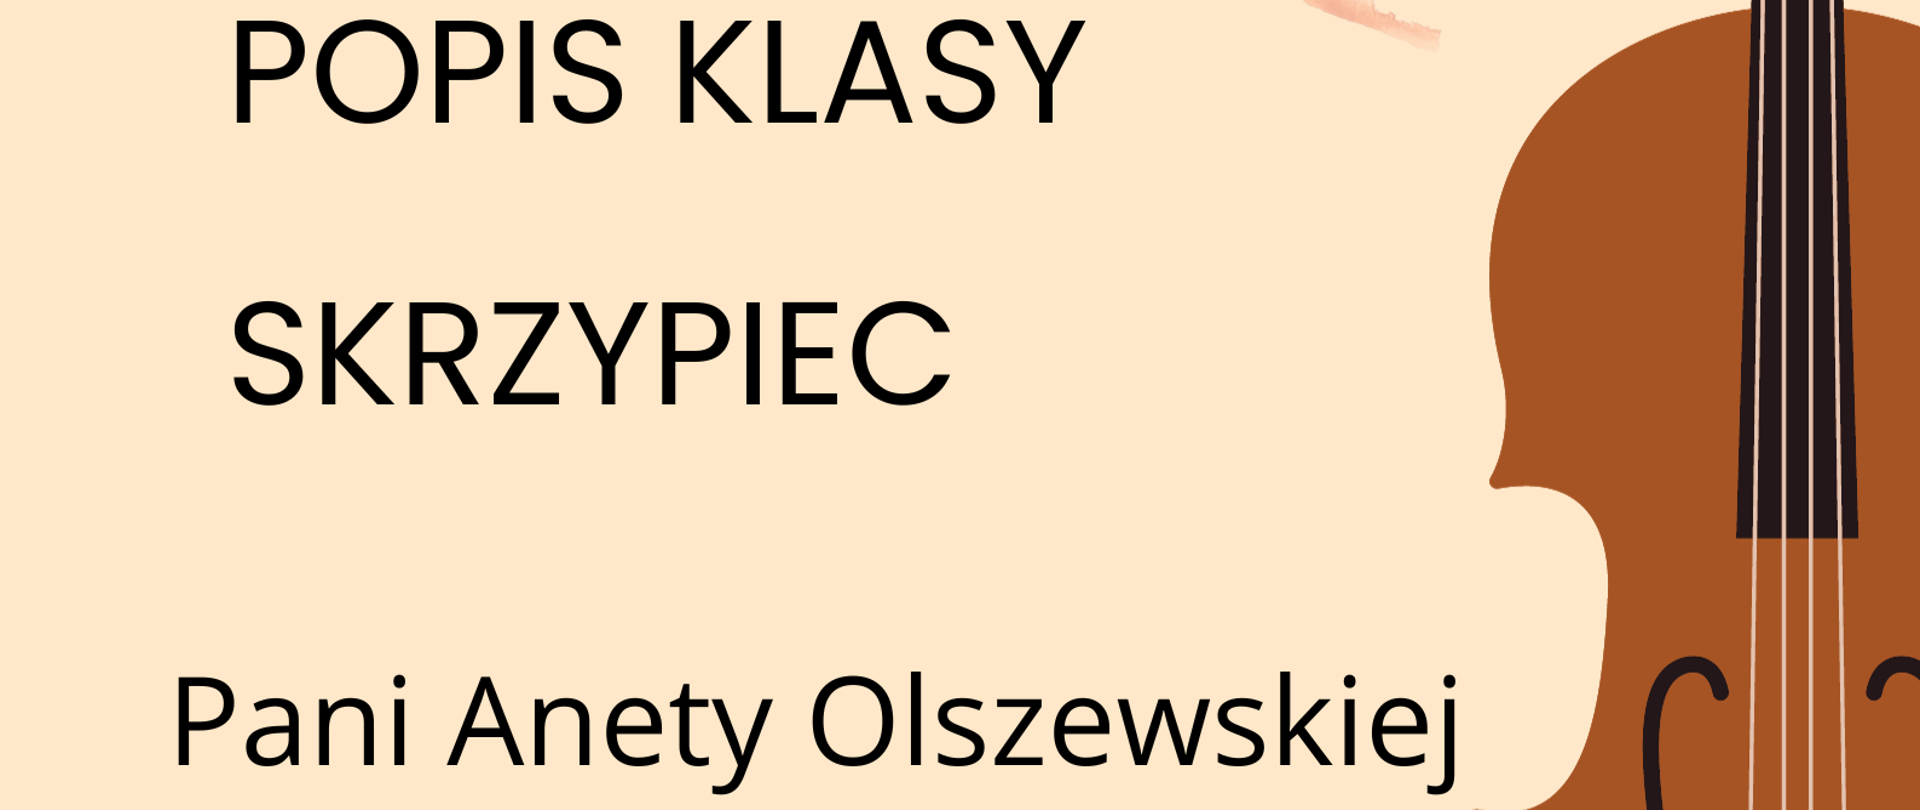 Plakat popisu klas skrzypiec Pani Anety Olszewskiej. Na beżowym tle po lewej stronie zawarte są informacje o terminie i miejscu popisu. Po prawej stronie znajduje się graficzne przedstawienie skrzypiec ustawionych pionowo gryfem do góry.